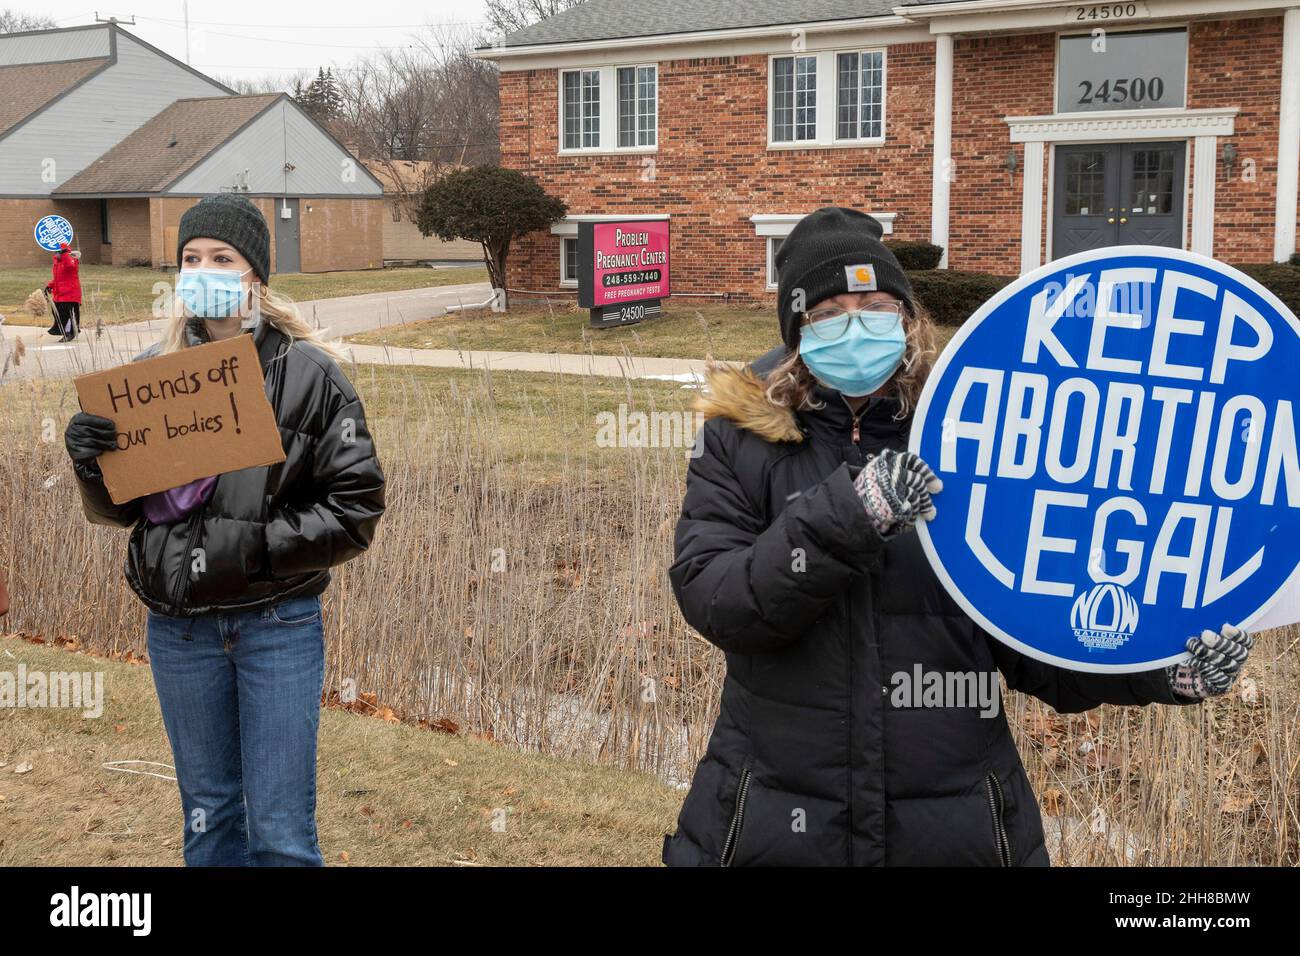 Southfield, Michigan - les militants des droits à l'avortement piquent le Problem grossesse Center, qui, selon eux, était une 'clinique de bidons' avec une fin anti-avortement Banque D'Images